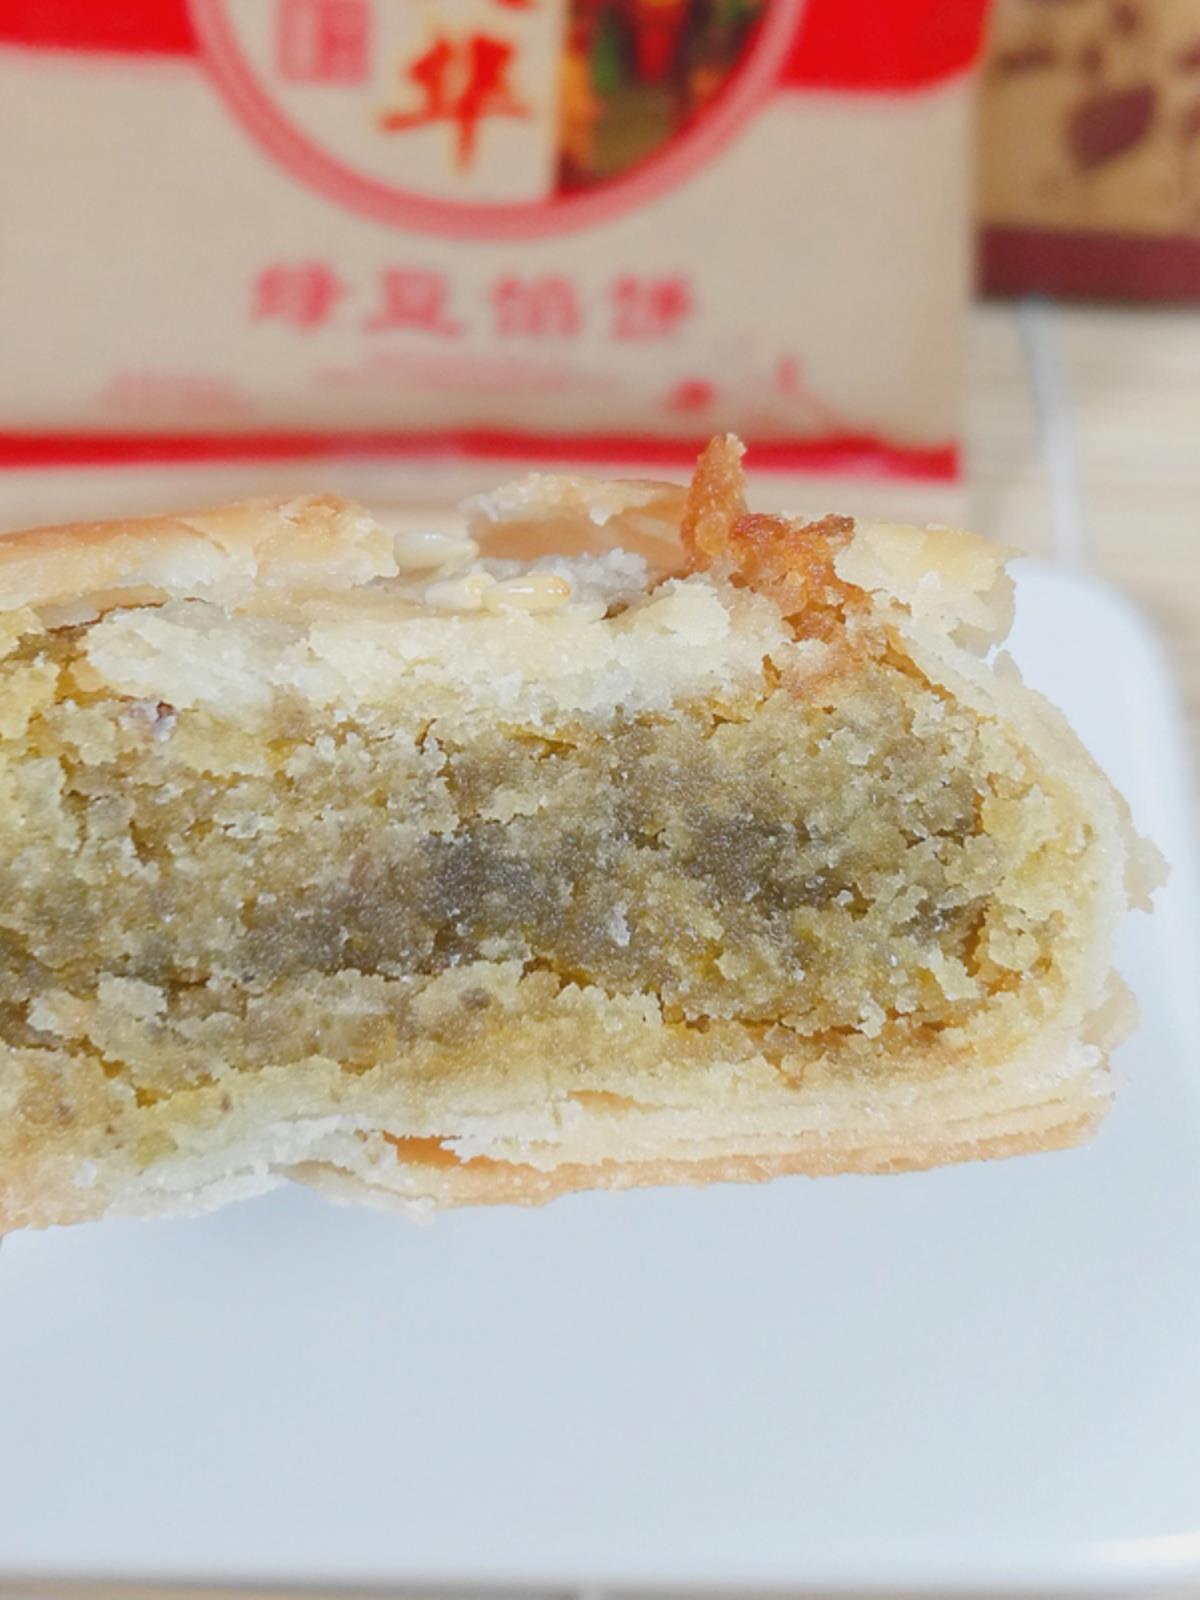 新品锦大华厦门馅饼传统老式糕点红豆绿豆饼整箱福建特产零食小吃